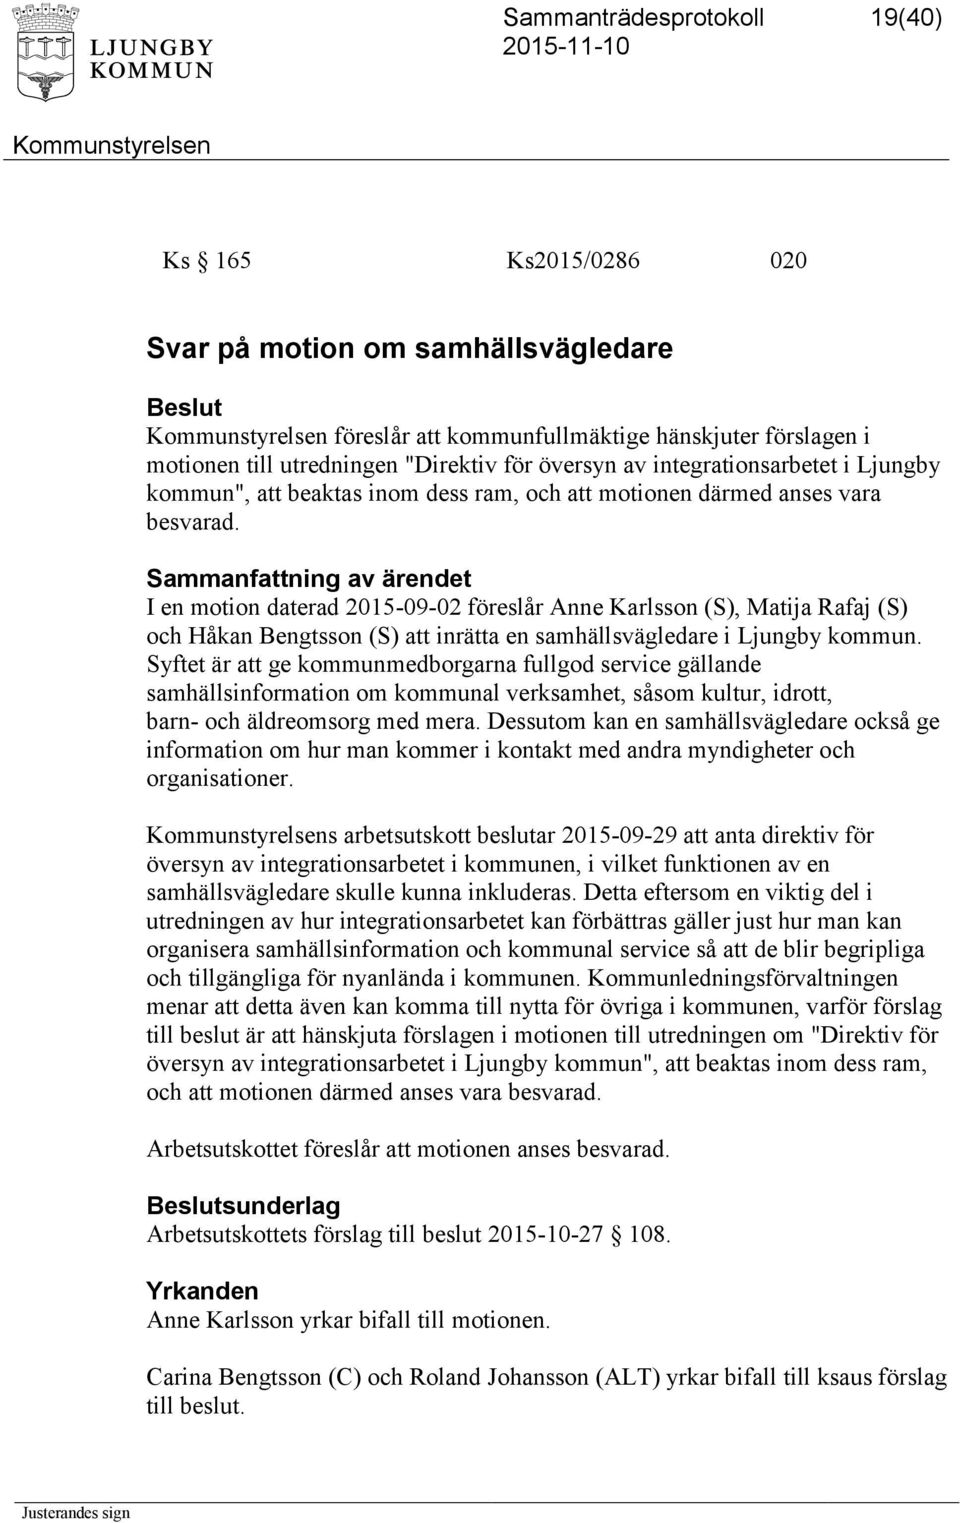 I en motion daterad 2015-09-02 föreslår Anne Karlsson (S), Matija Rafaj (S) och Håkan Bengtsson (S) att inrätta en samhällsvägledare i Ljungby kommun.